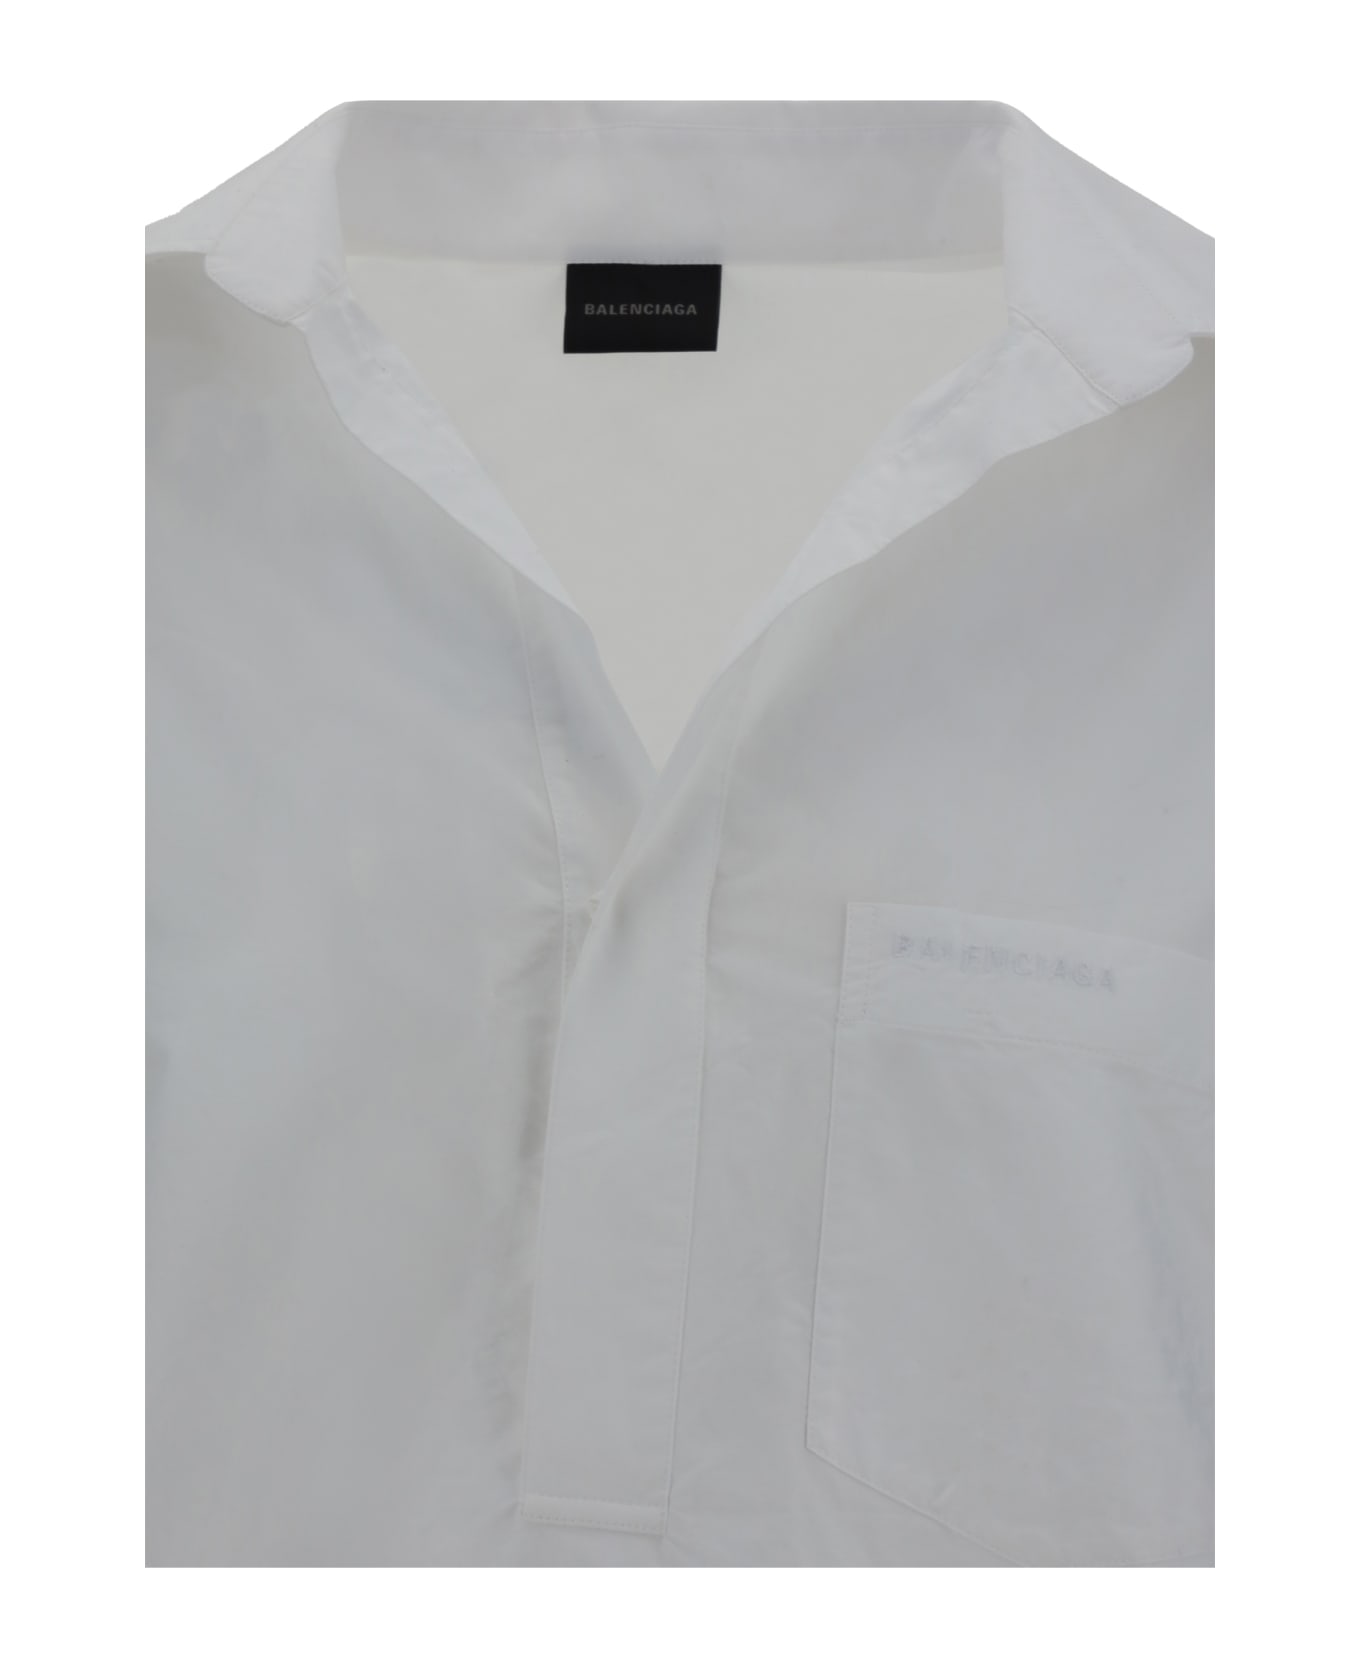 Balenciaga Vareuse Shirt - White